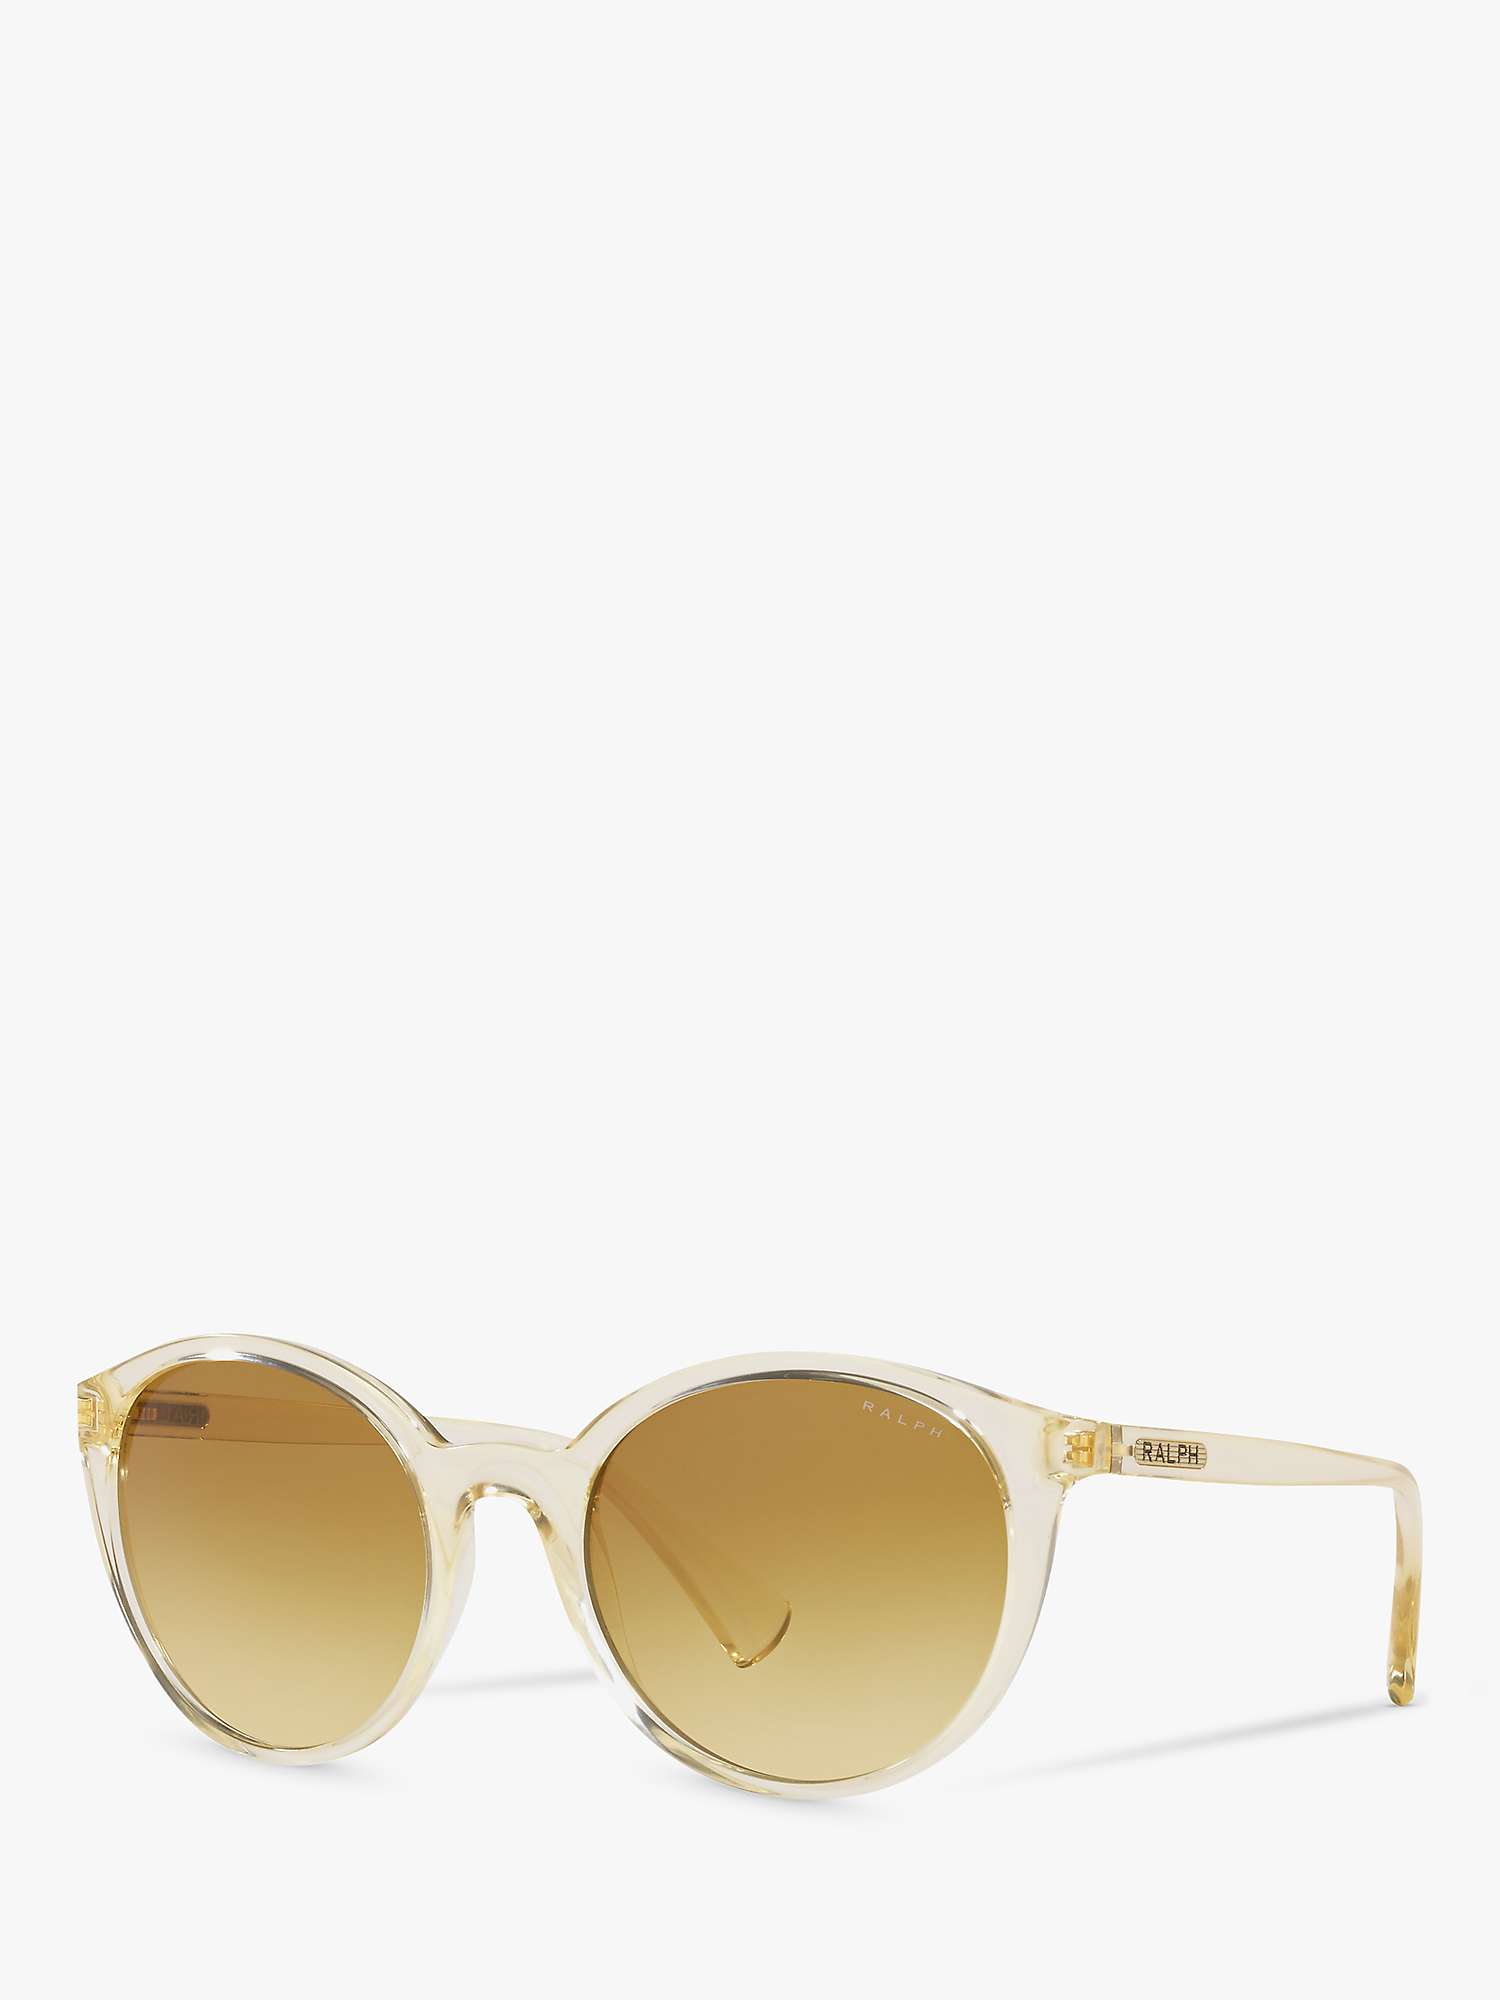 Buy Ralph Lauren RA5273 Women's Oval Sunglasses, Pinot Grigio/Brown Online at johnlewis.com